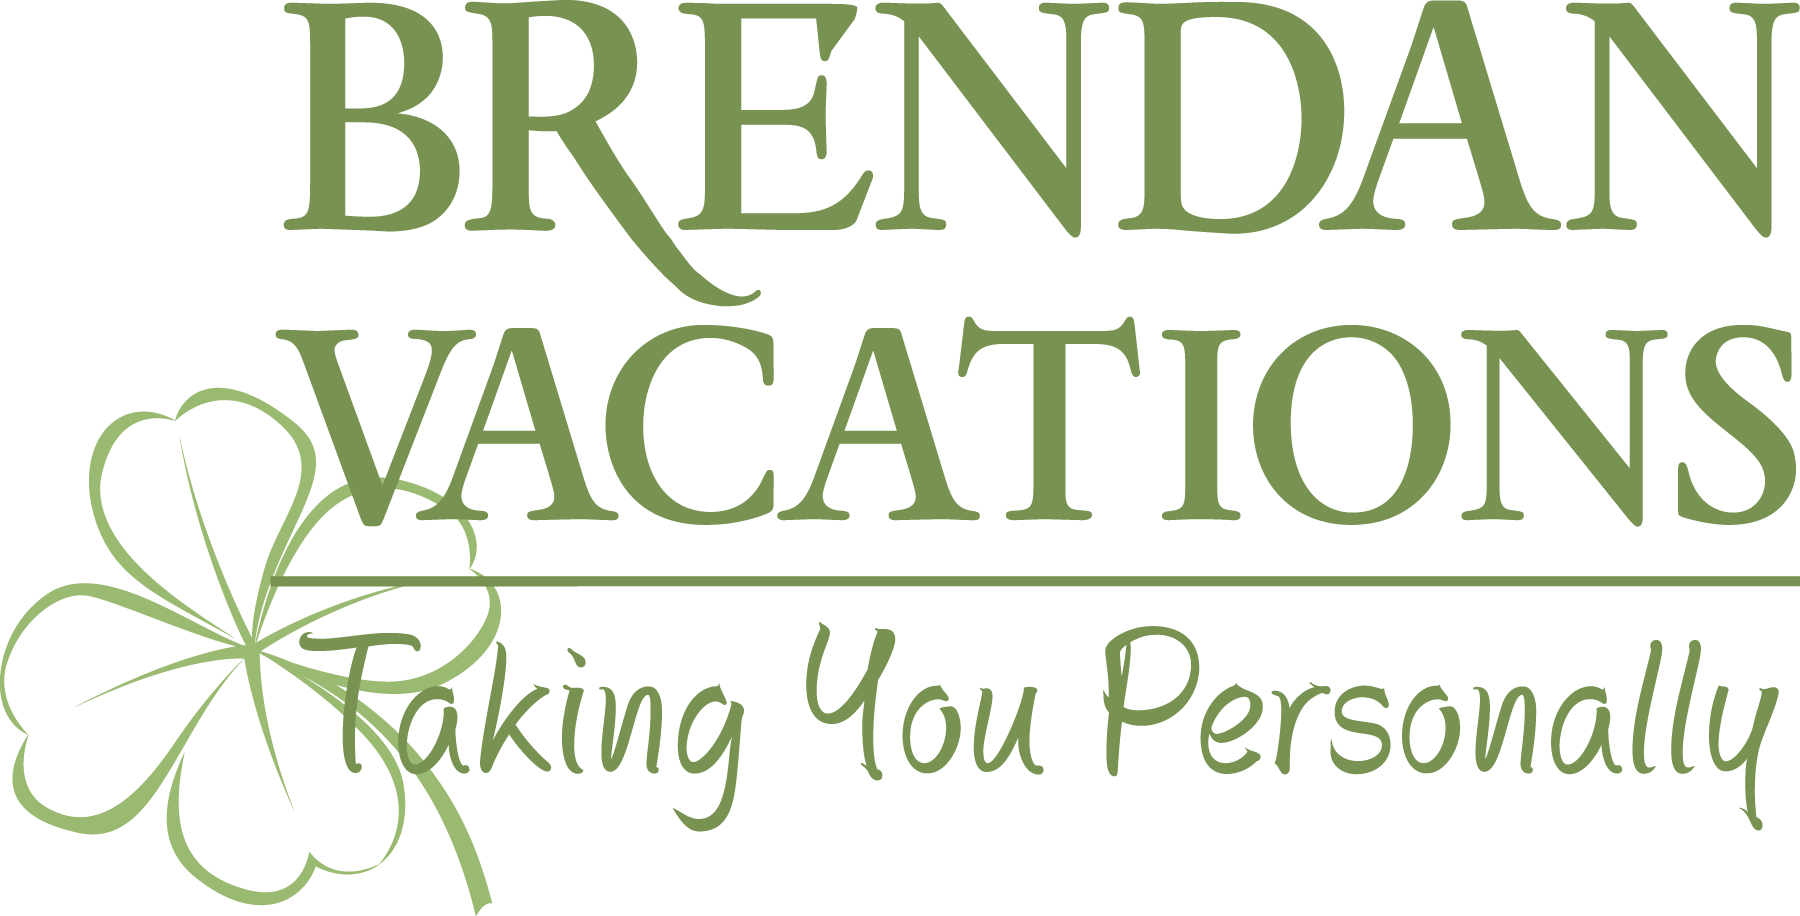 2012 Brendan Vacations Logo